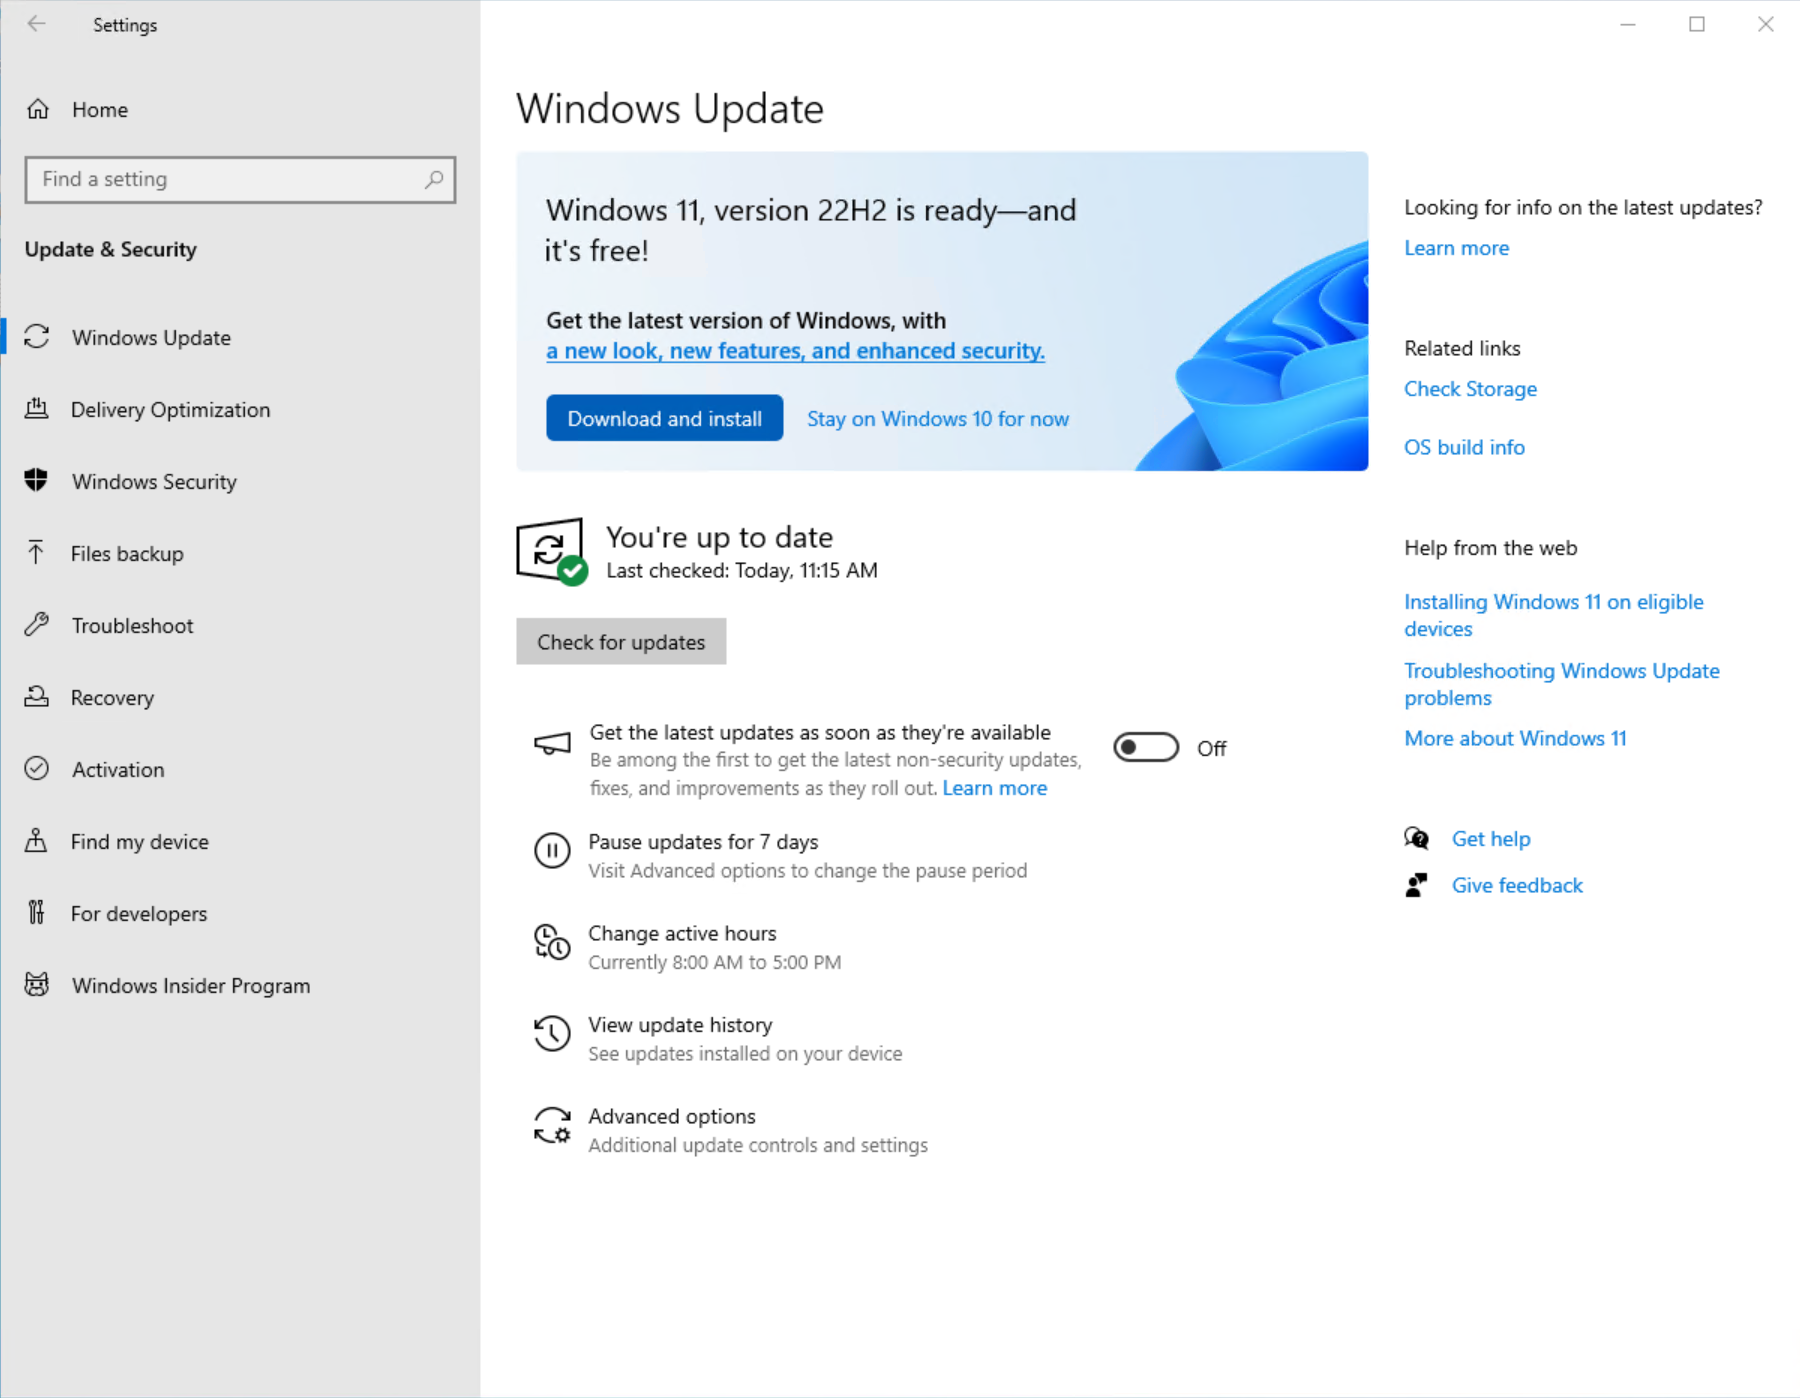 ayarlar'daki Windows 11 indirilmeye ve yüklenmeye hazır olduğunu gösteren Windows Update sayfasının ekran görüntüsü.